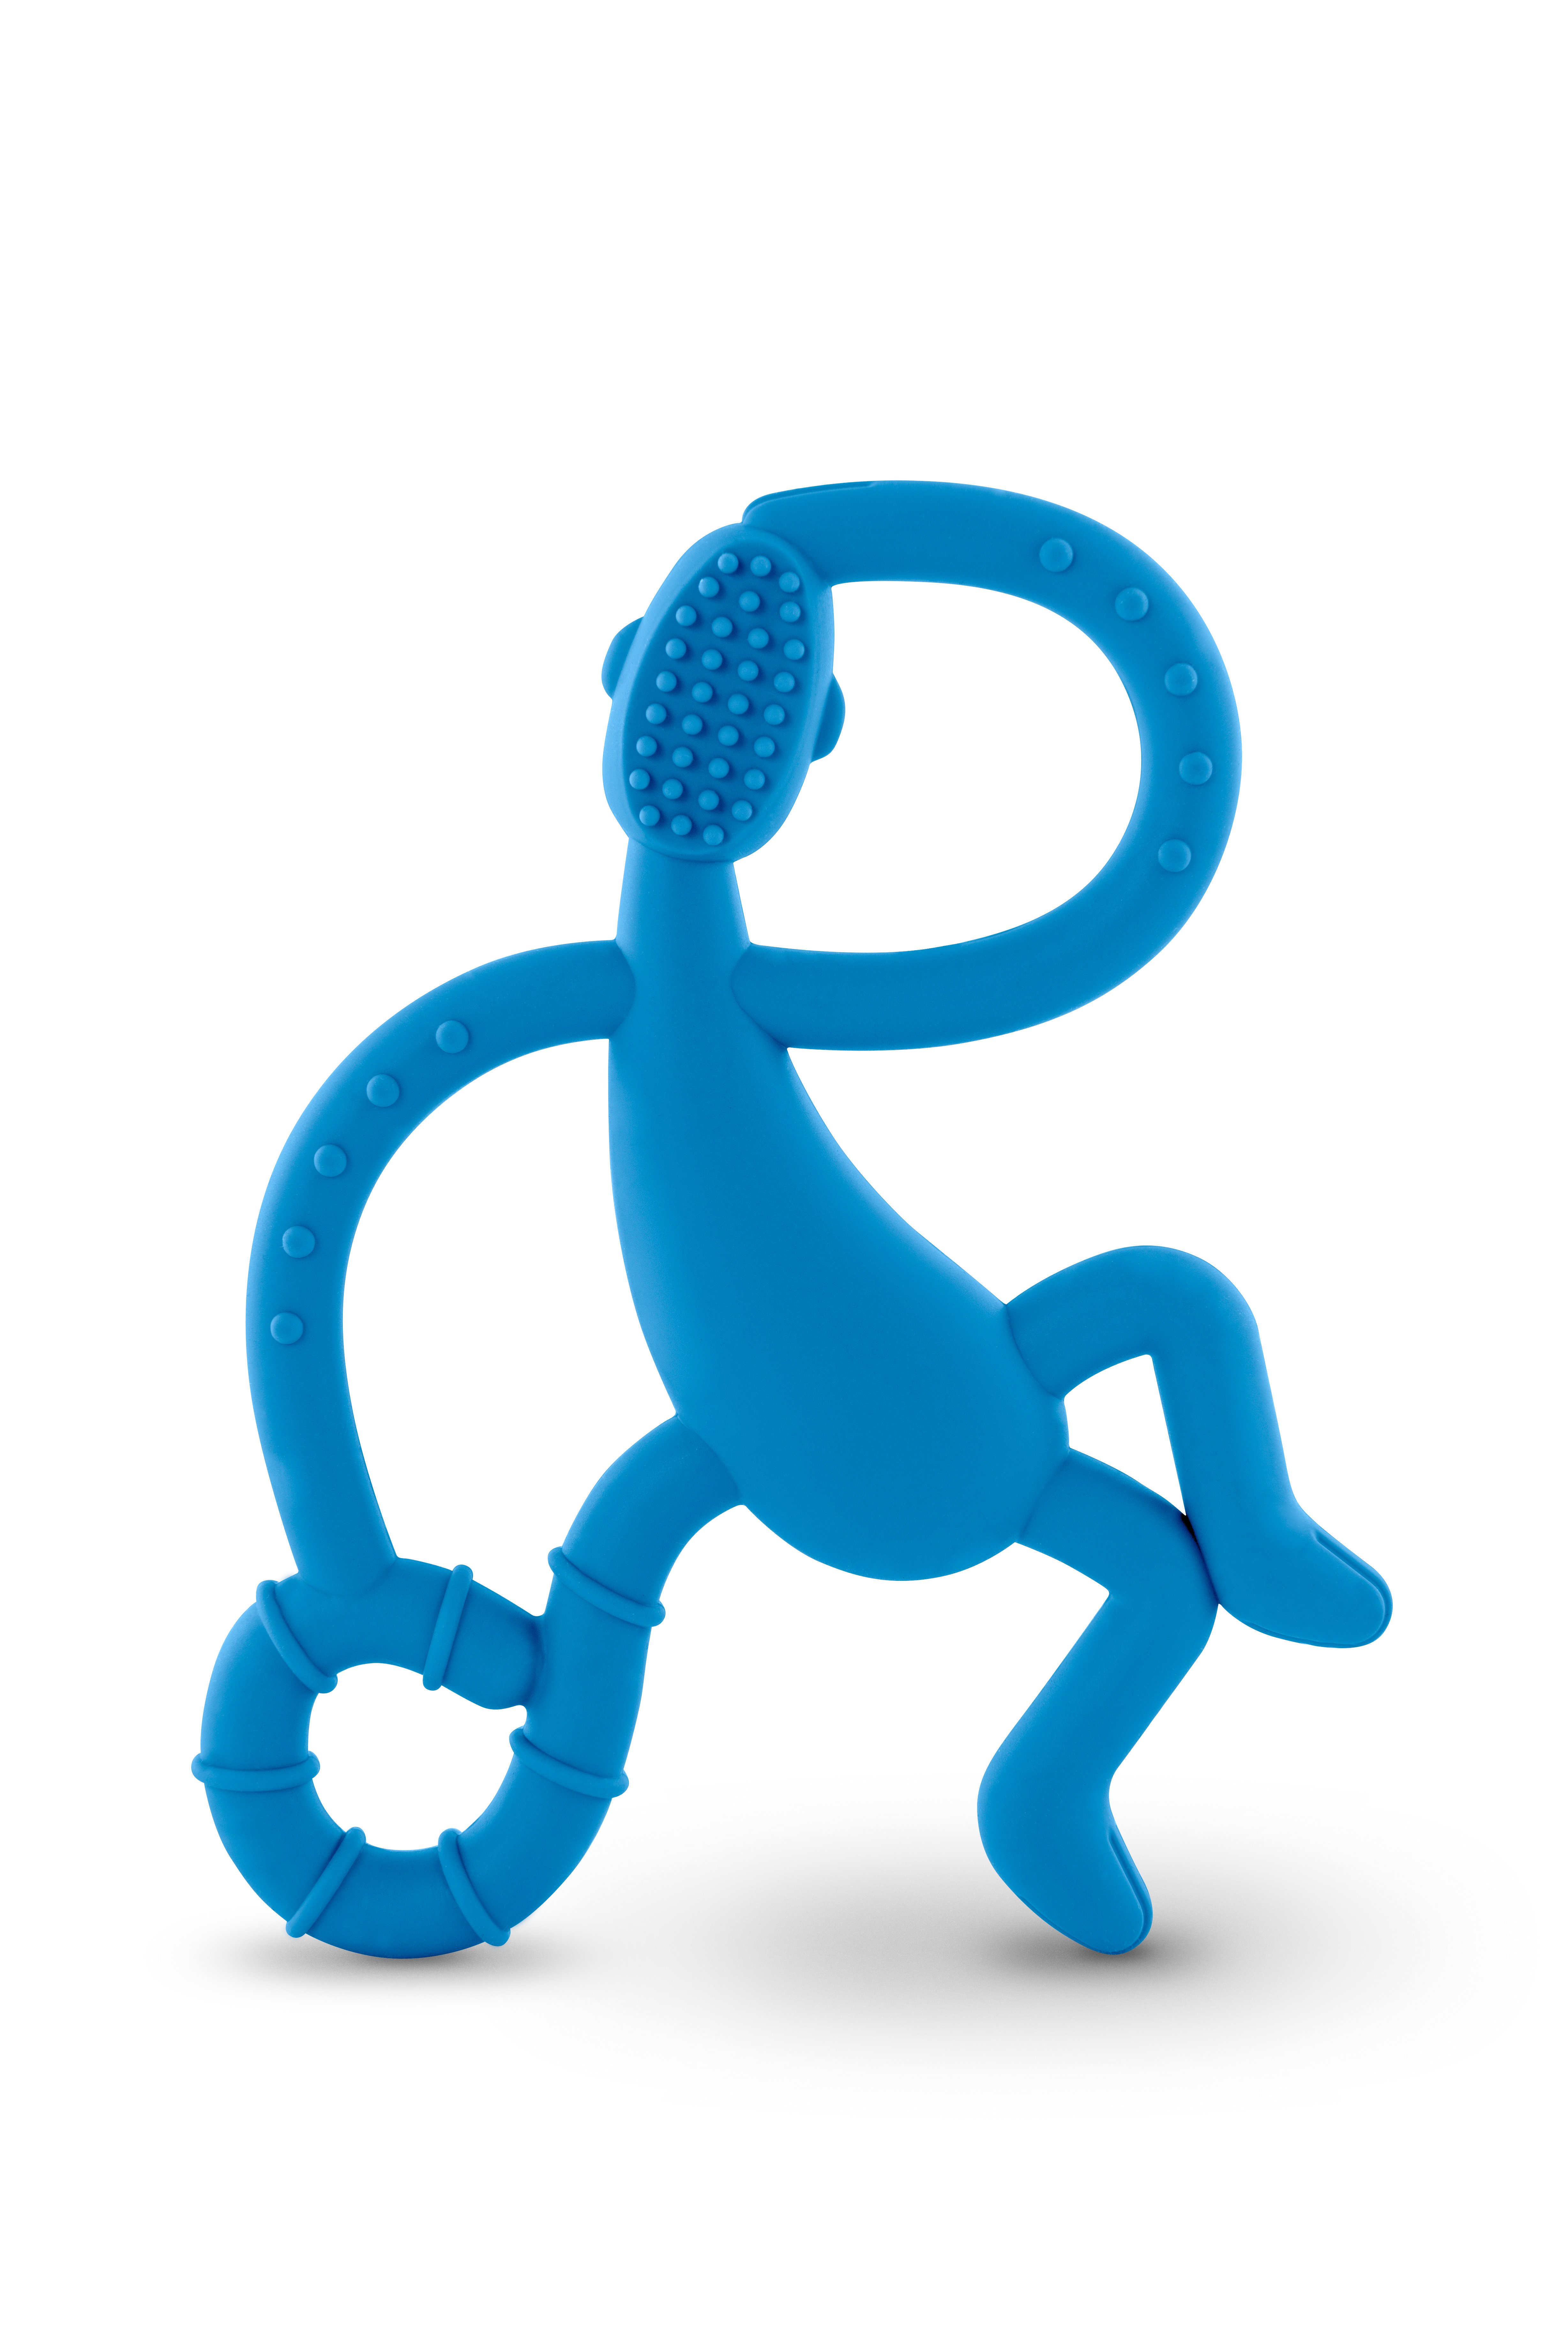 Игрушка-прорезыватель Matchstick Monkey Танцующая Обезьянка, 14 см, синяя (MM-DMT-002) - фото 2